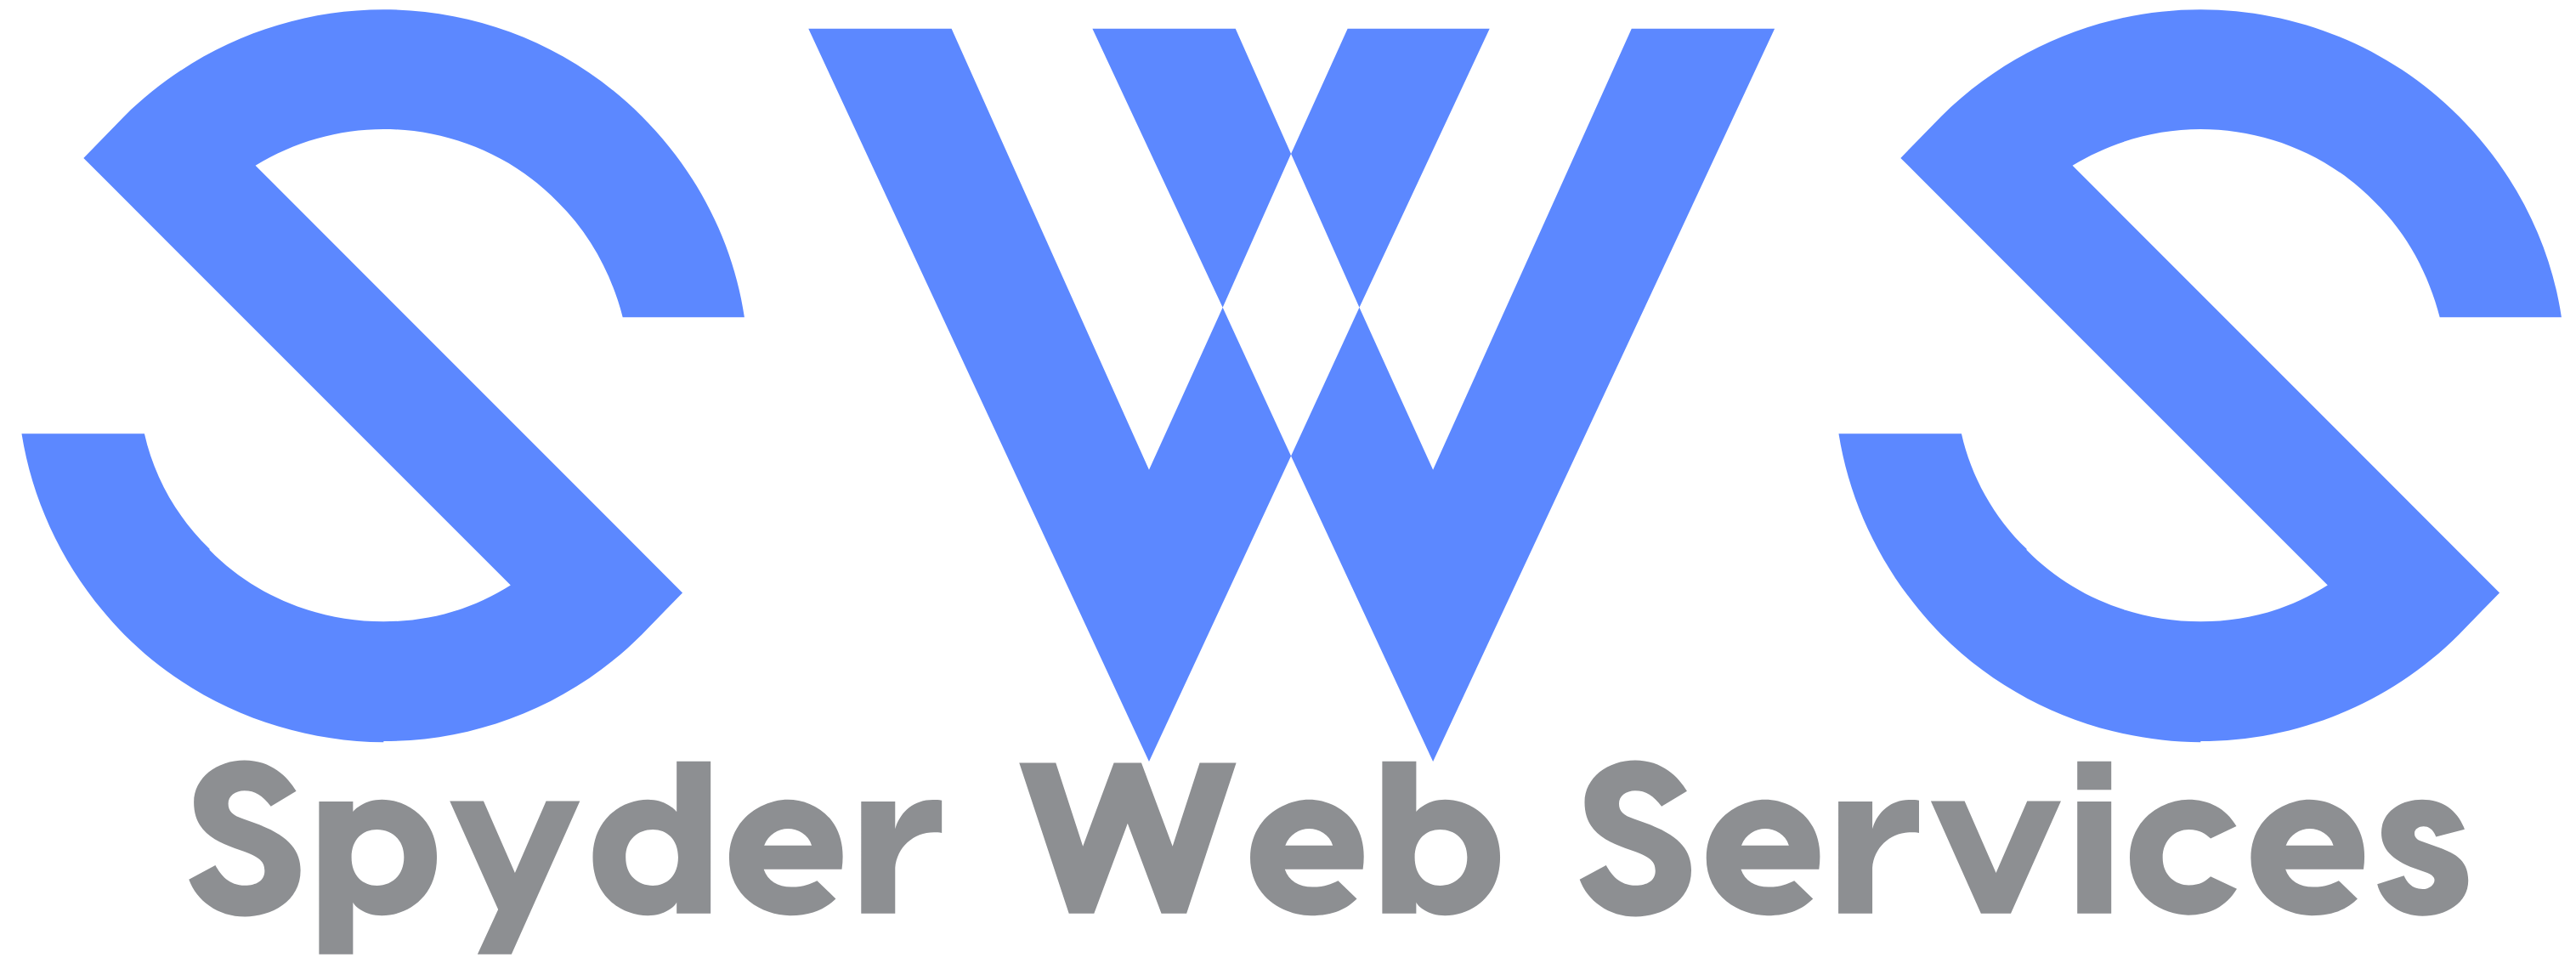 Spyder Web Services LLC